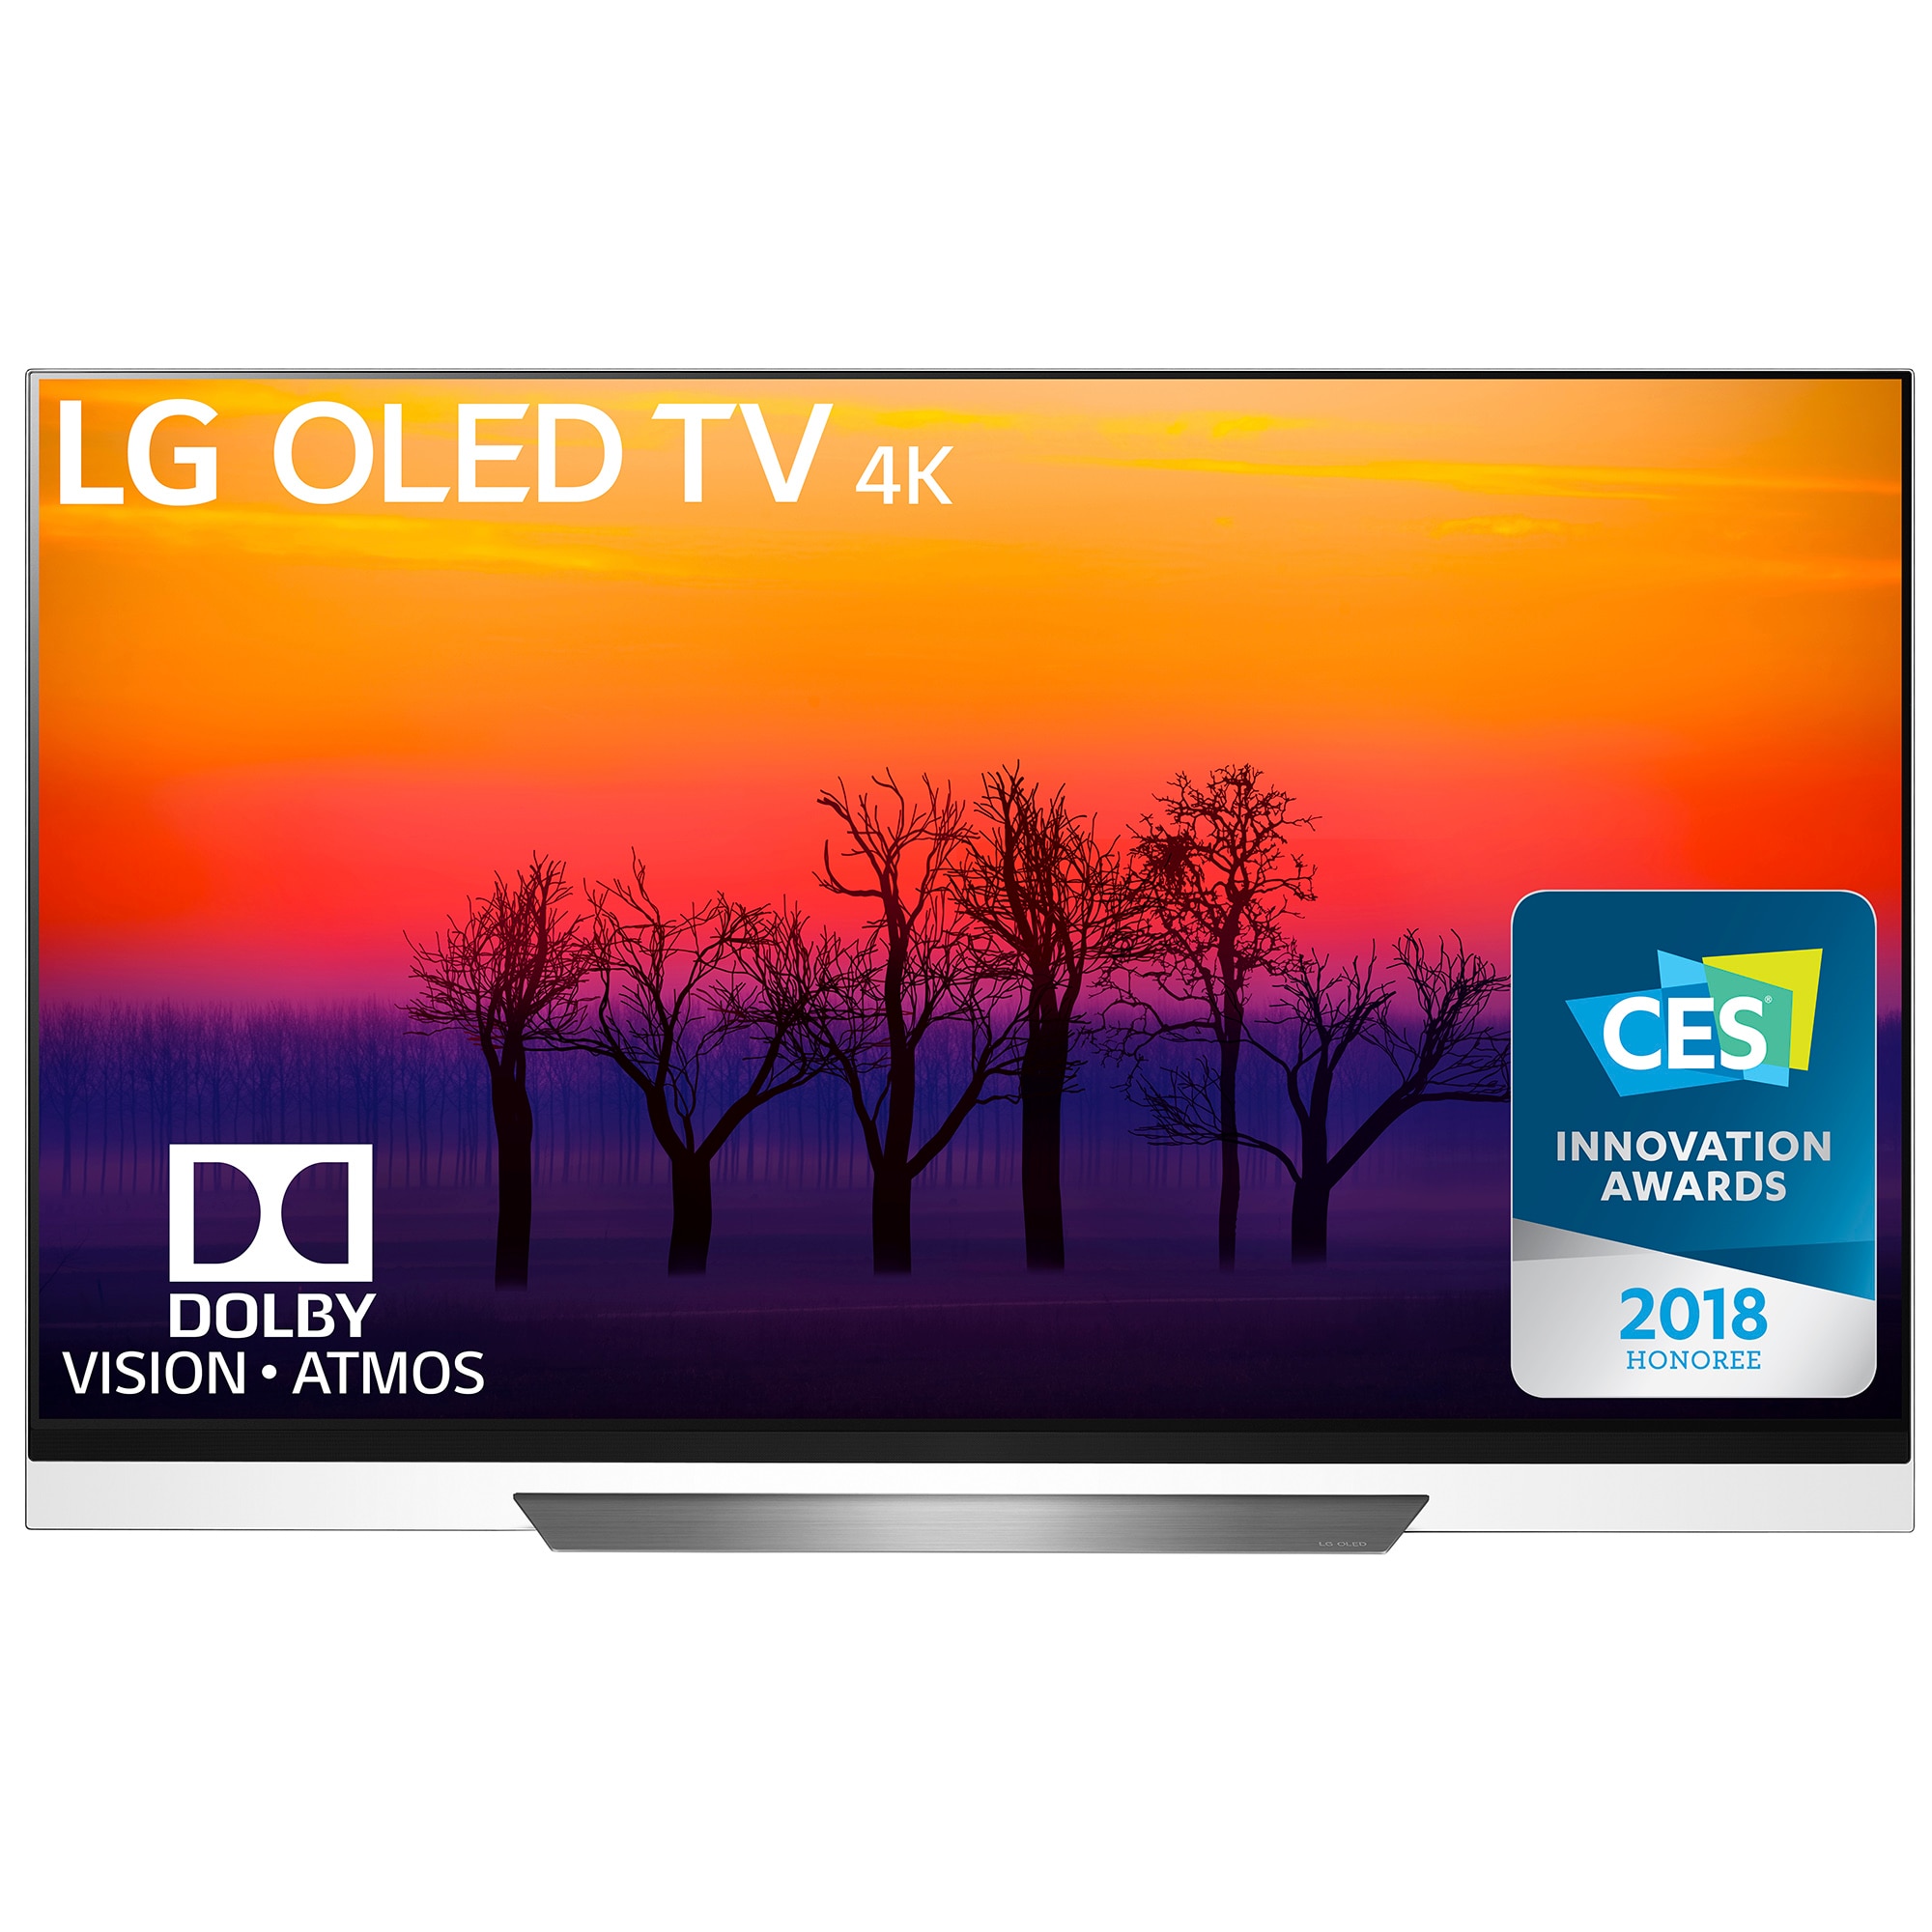 Телевизор LG OLED65E8PLA